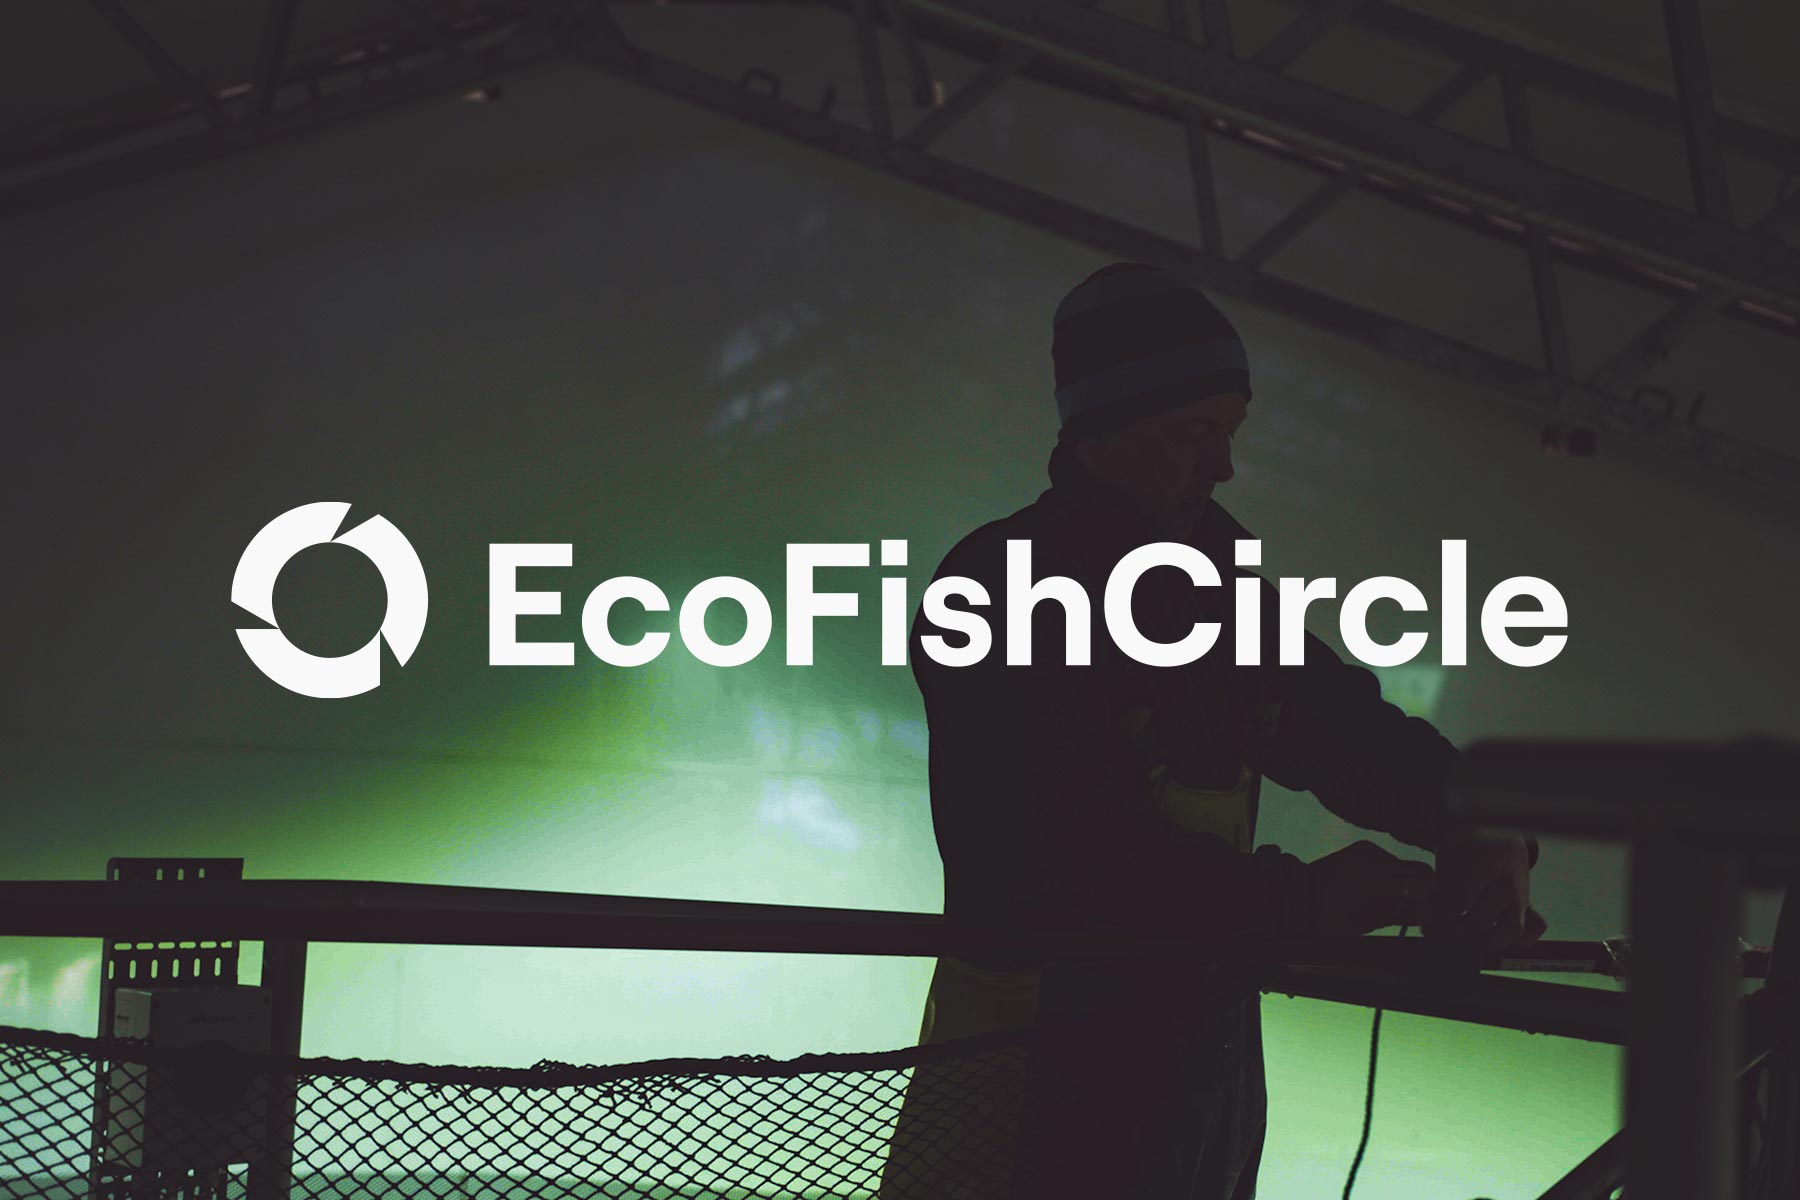 ecofishcircle-profil-havdur_design-02